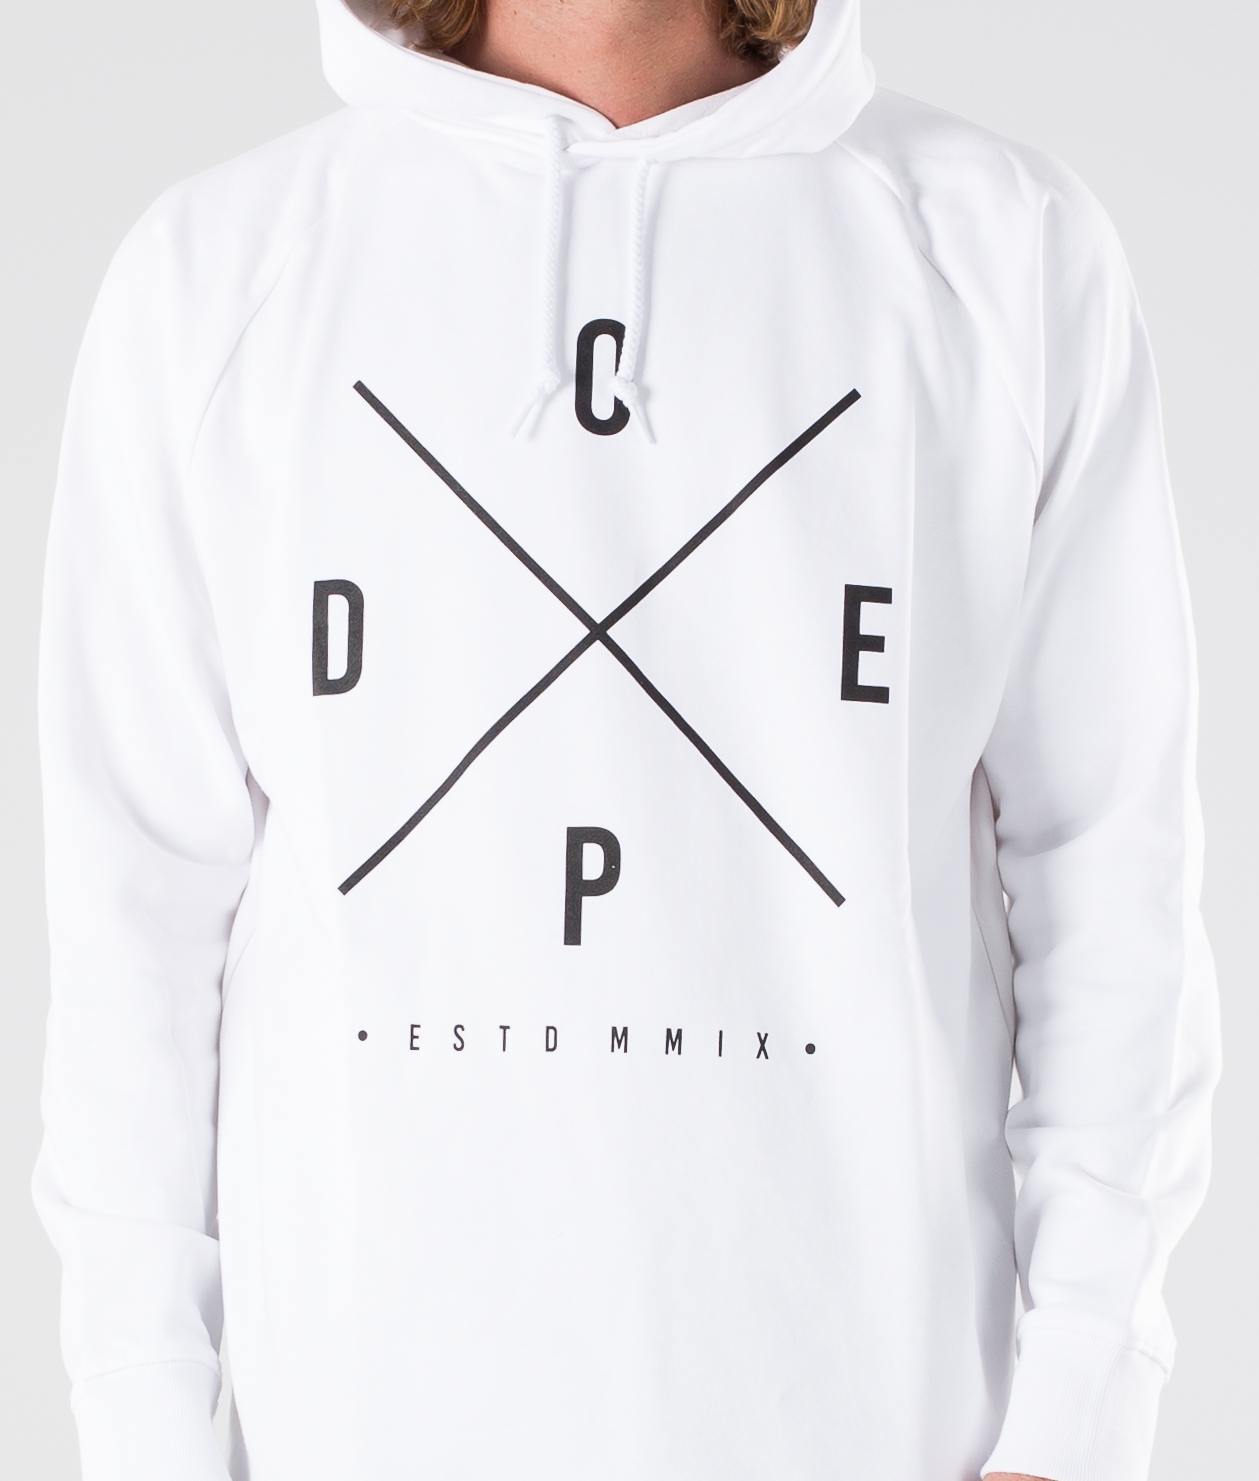 dope zip up hoodies